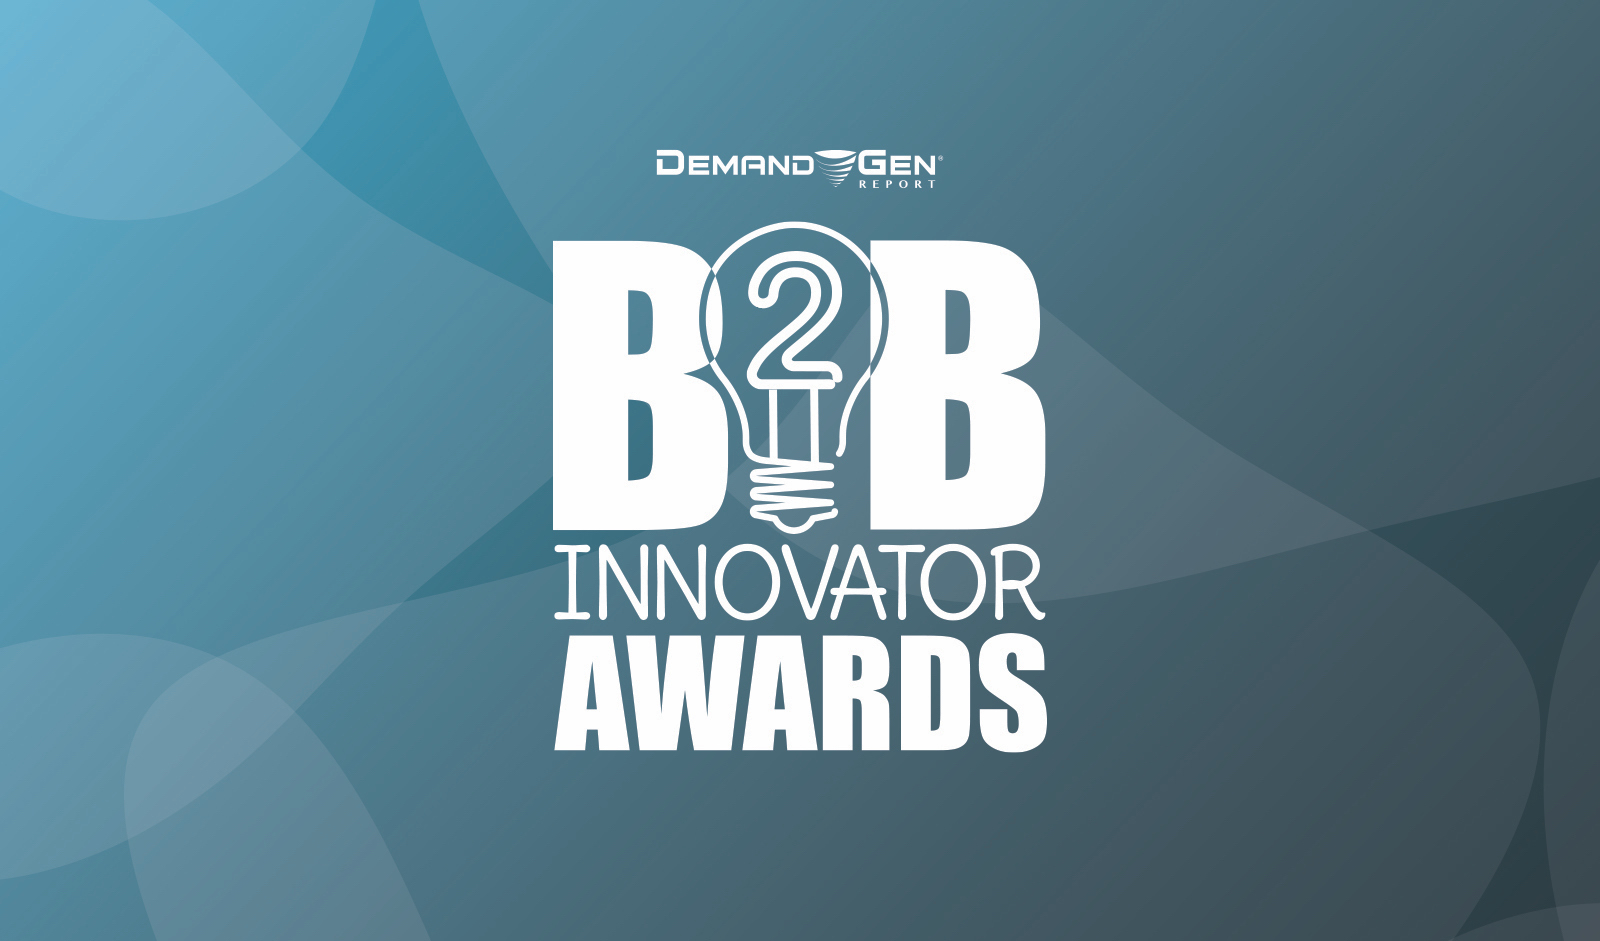 b2bia awards logo 2020